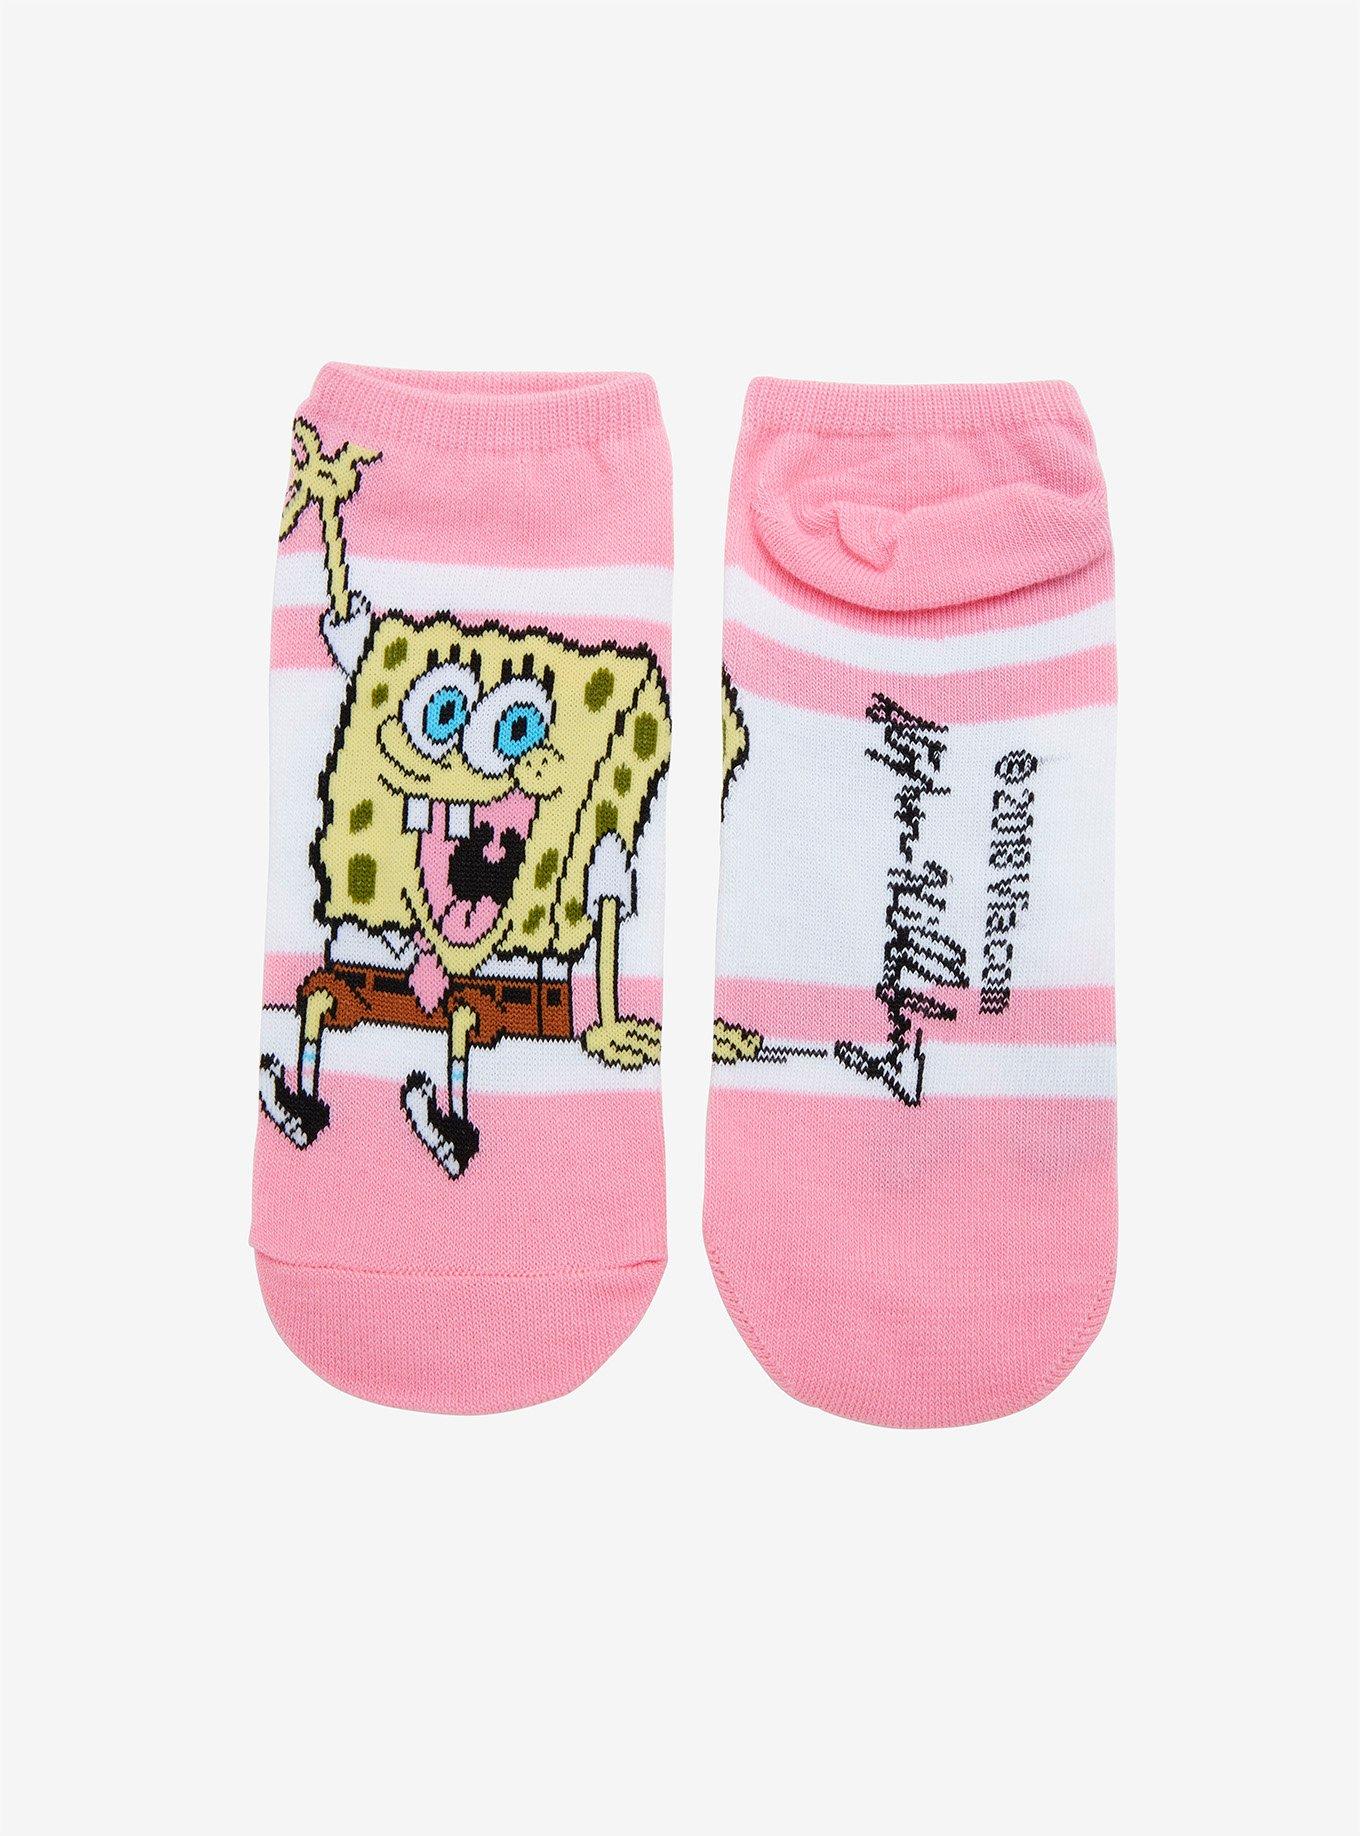 SpongeBob SquarePants Pink No-Show Socks, , hi-res